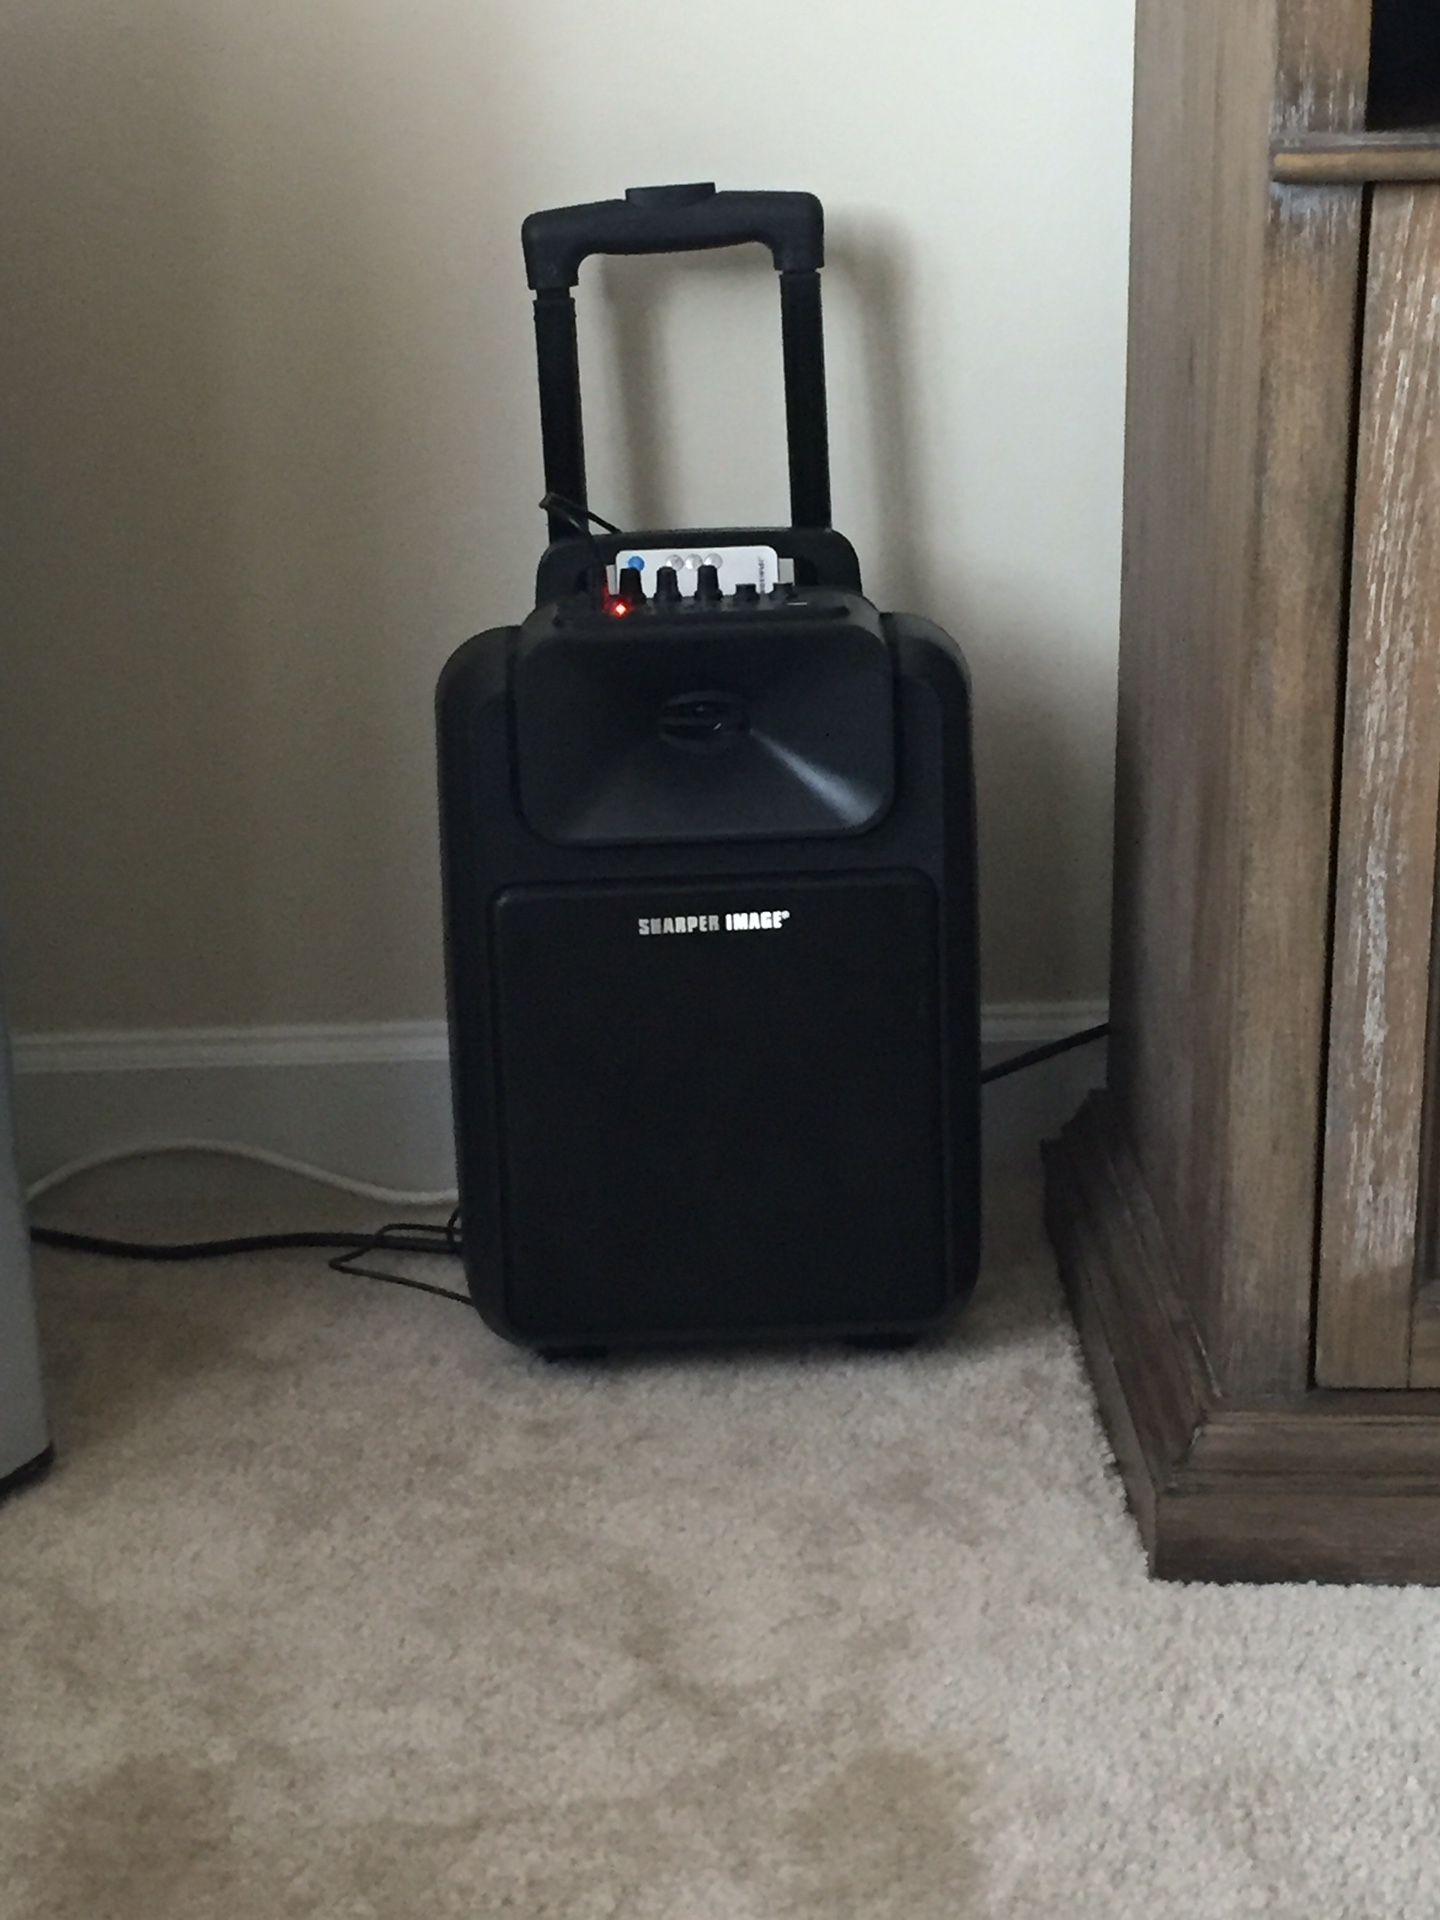 Sharper image suitcase speaker wireless